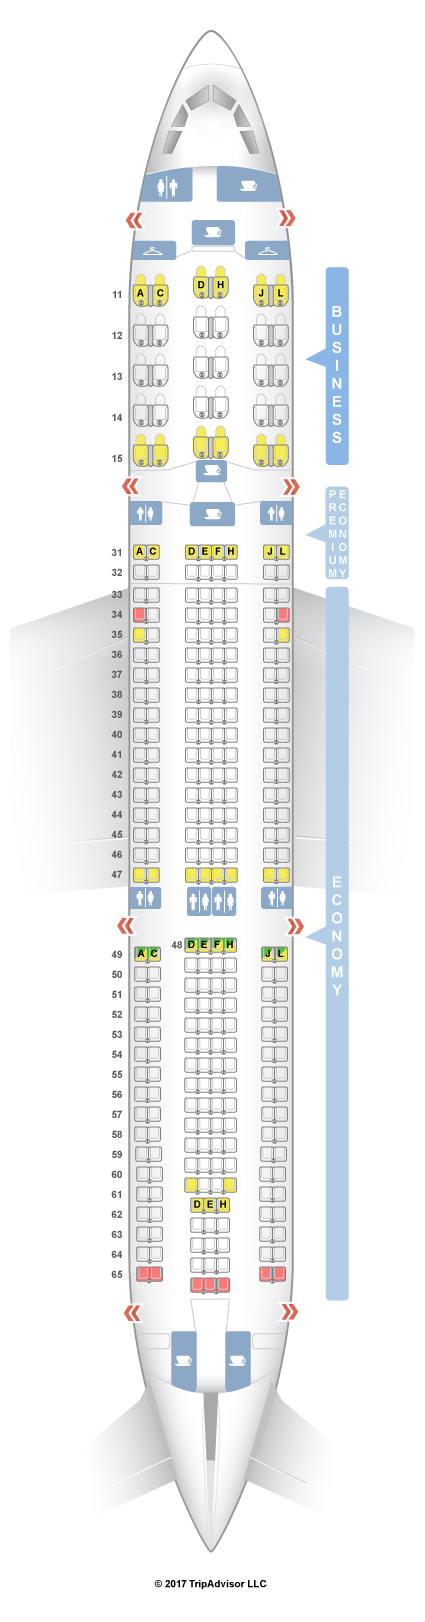 China Air Seating Chart